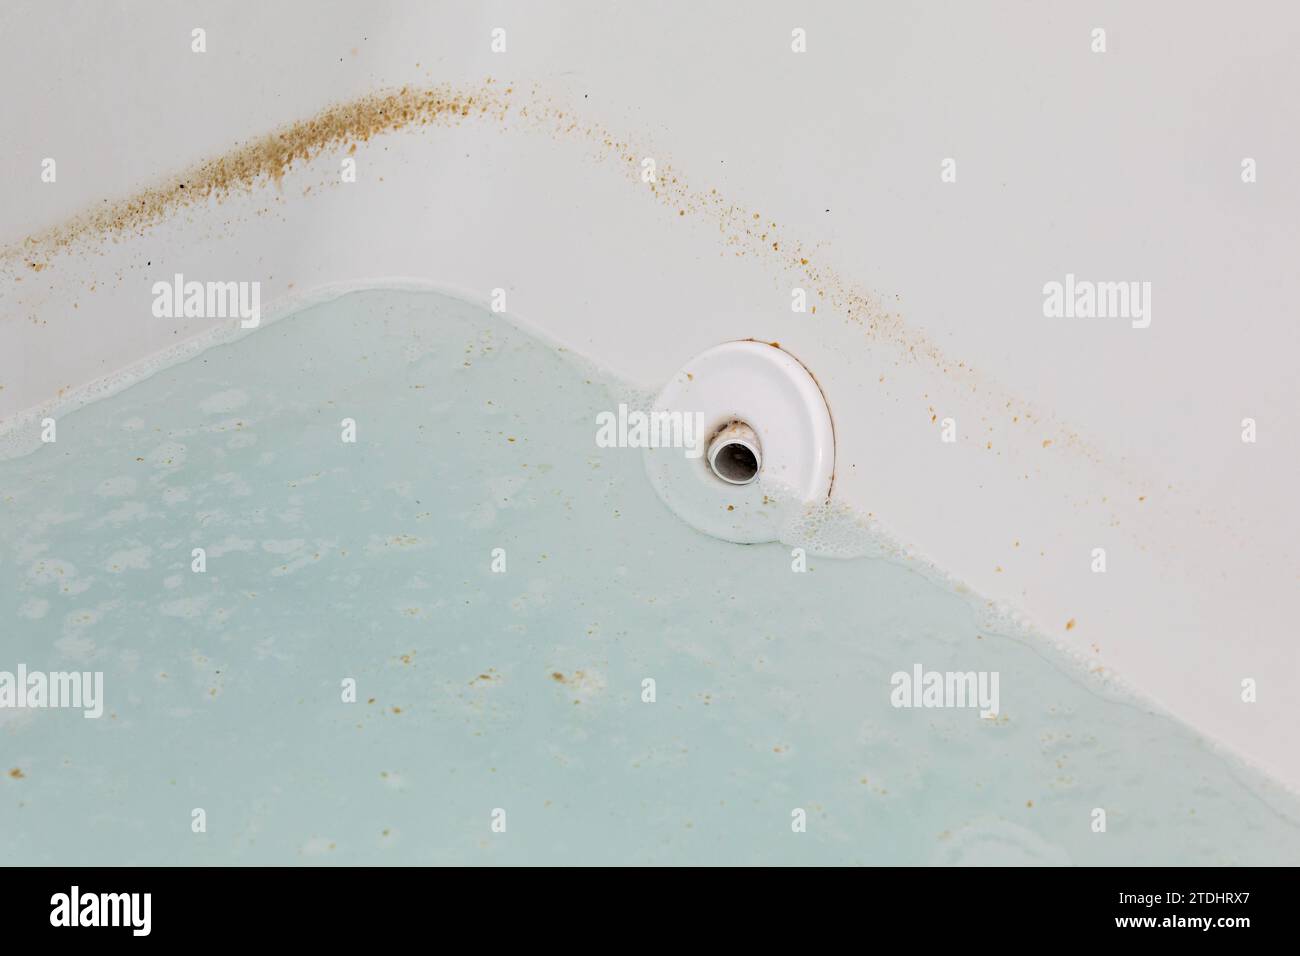 Vasca idromassaggio o vasca idromassaggio con acqua sporca. Faccende domestiche, pulizia del bagno e servizio di pulizia. Foto Stock